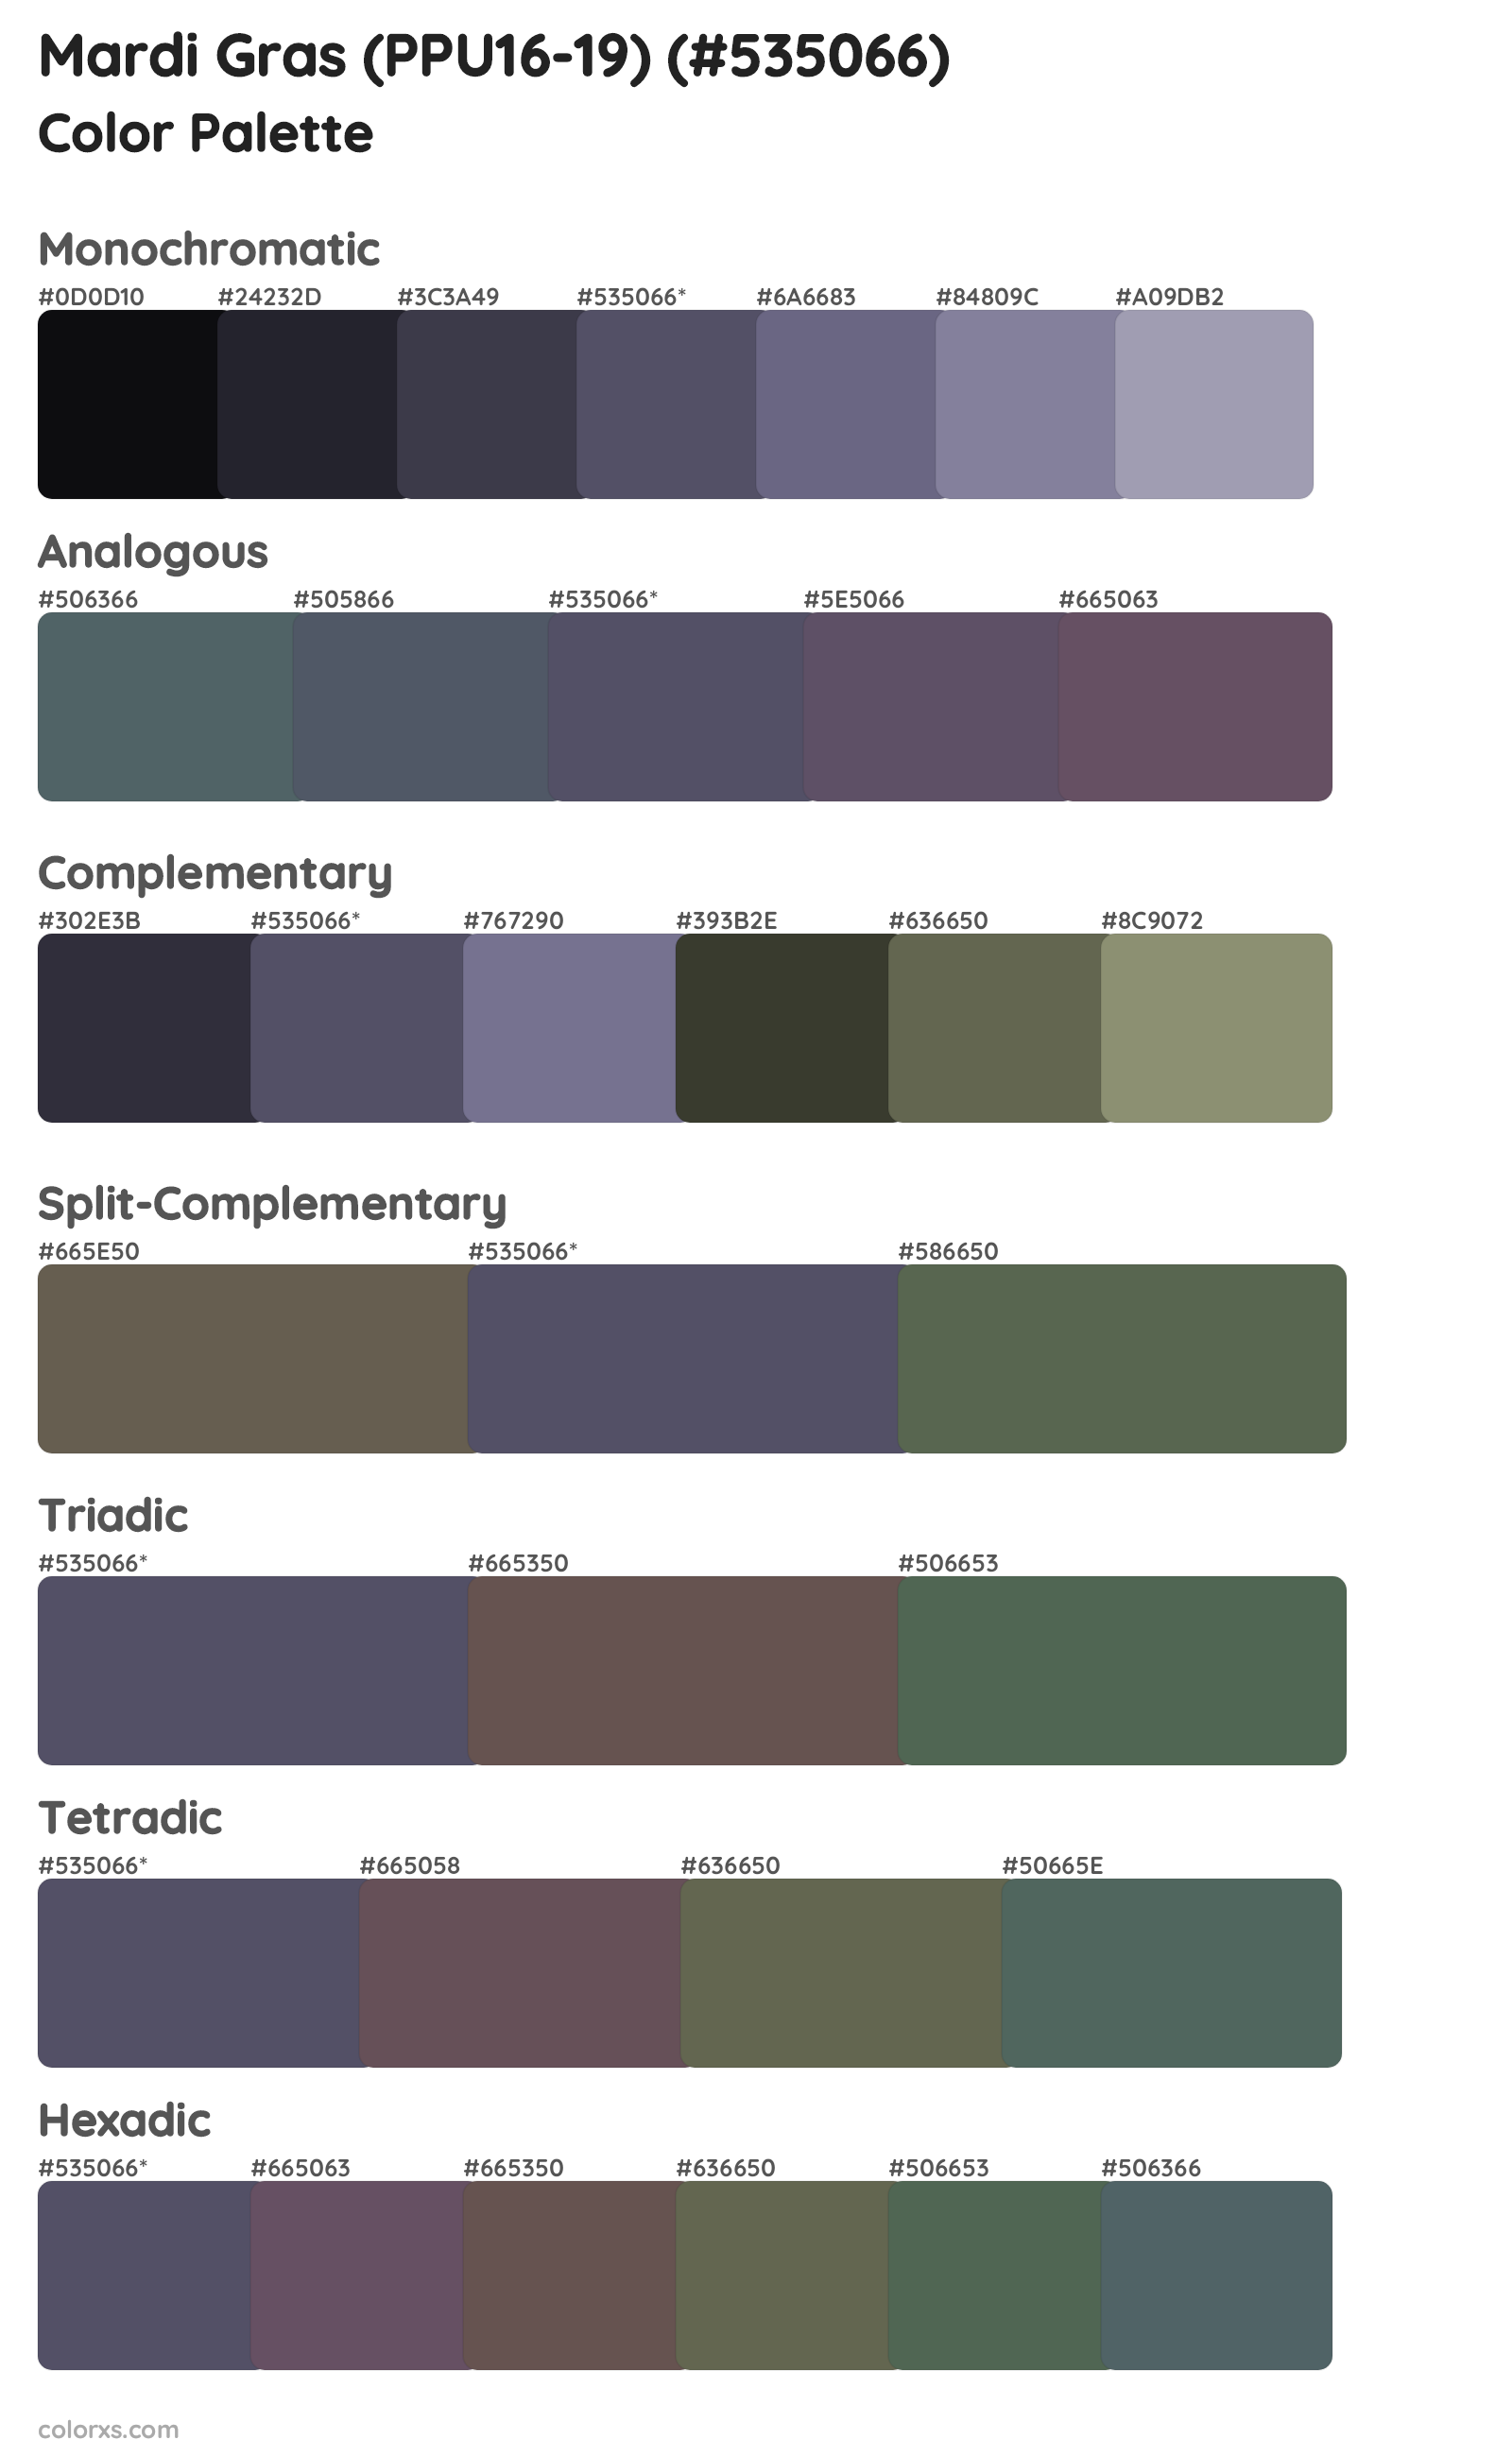 Mardi Gras (PPU16-19) Color Scheme Palettes